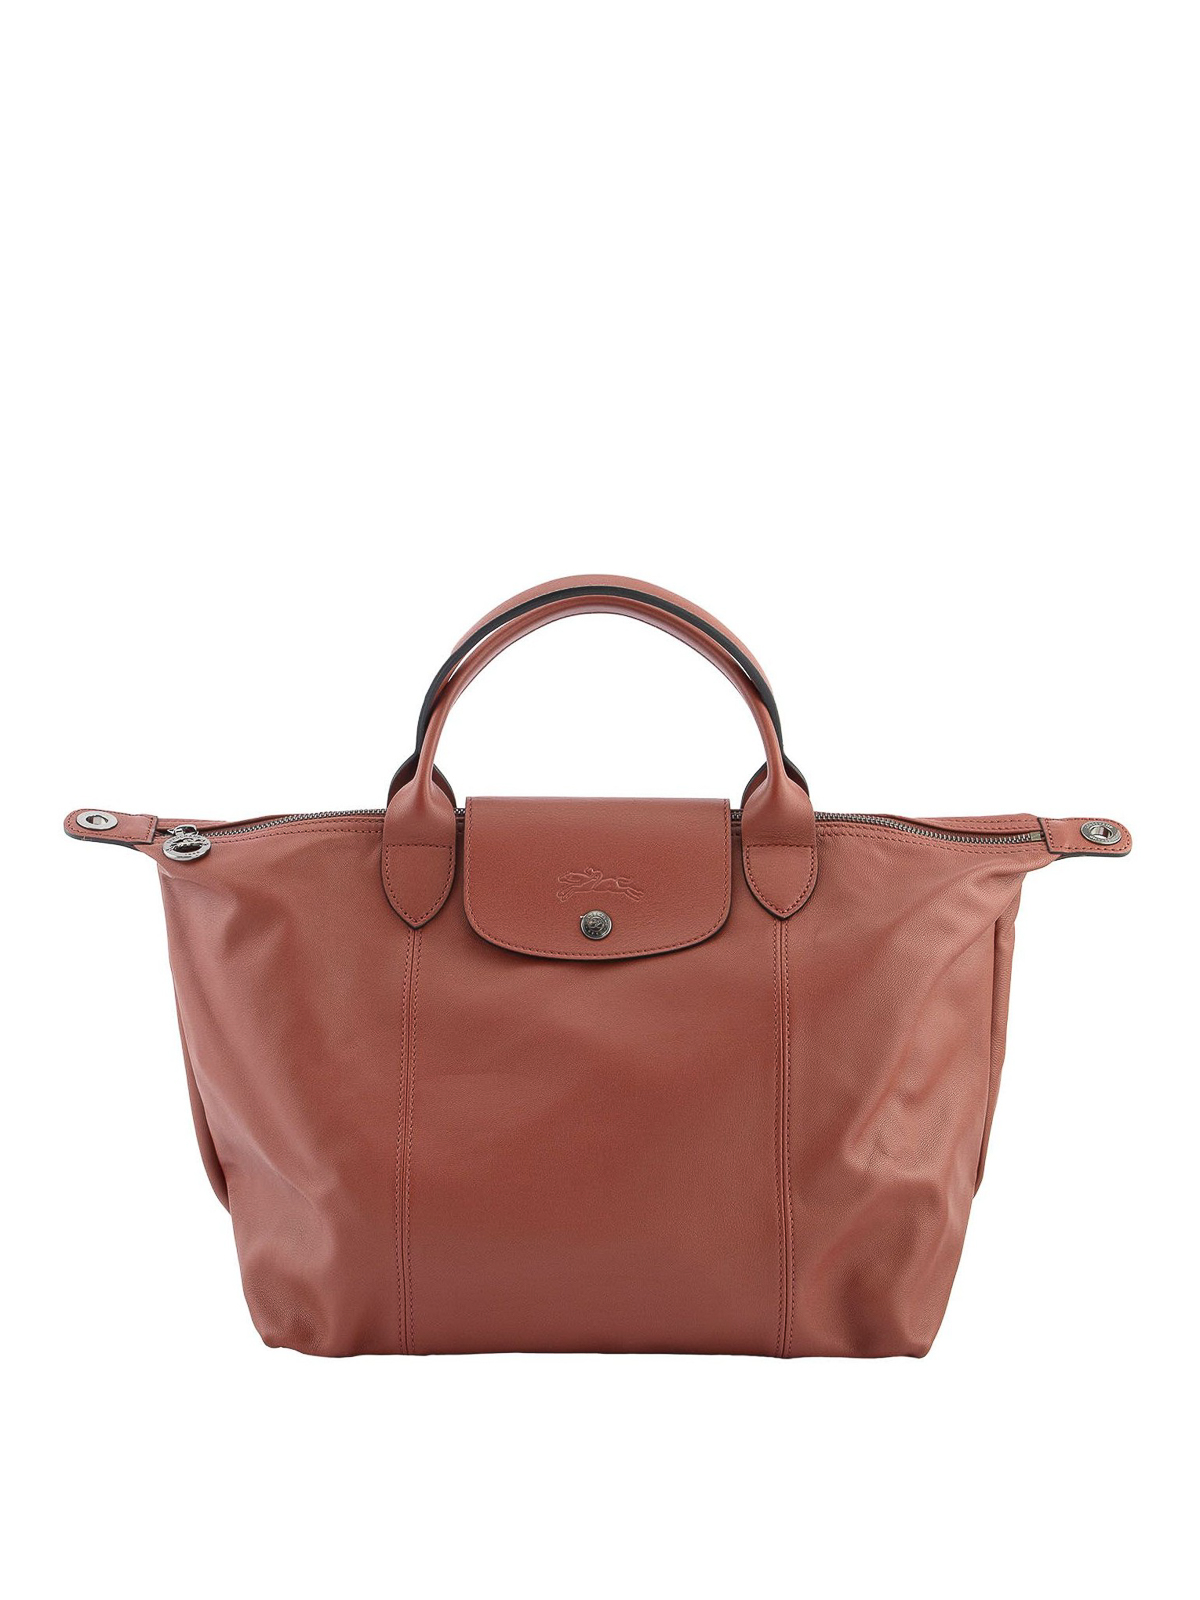 Longchamp, Bags, Longchamp Medium Leather Le Pliage Cuir Tote